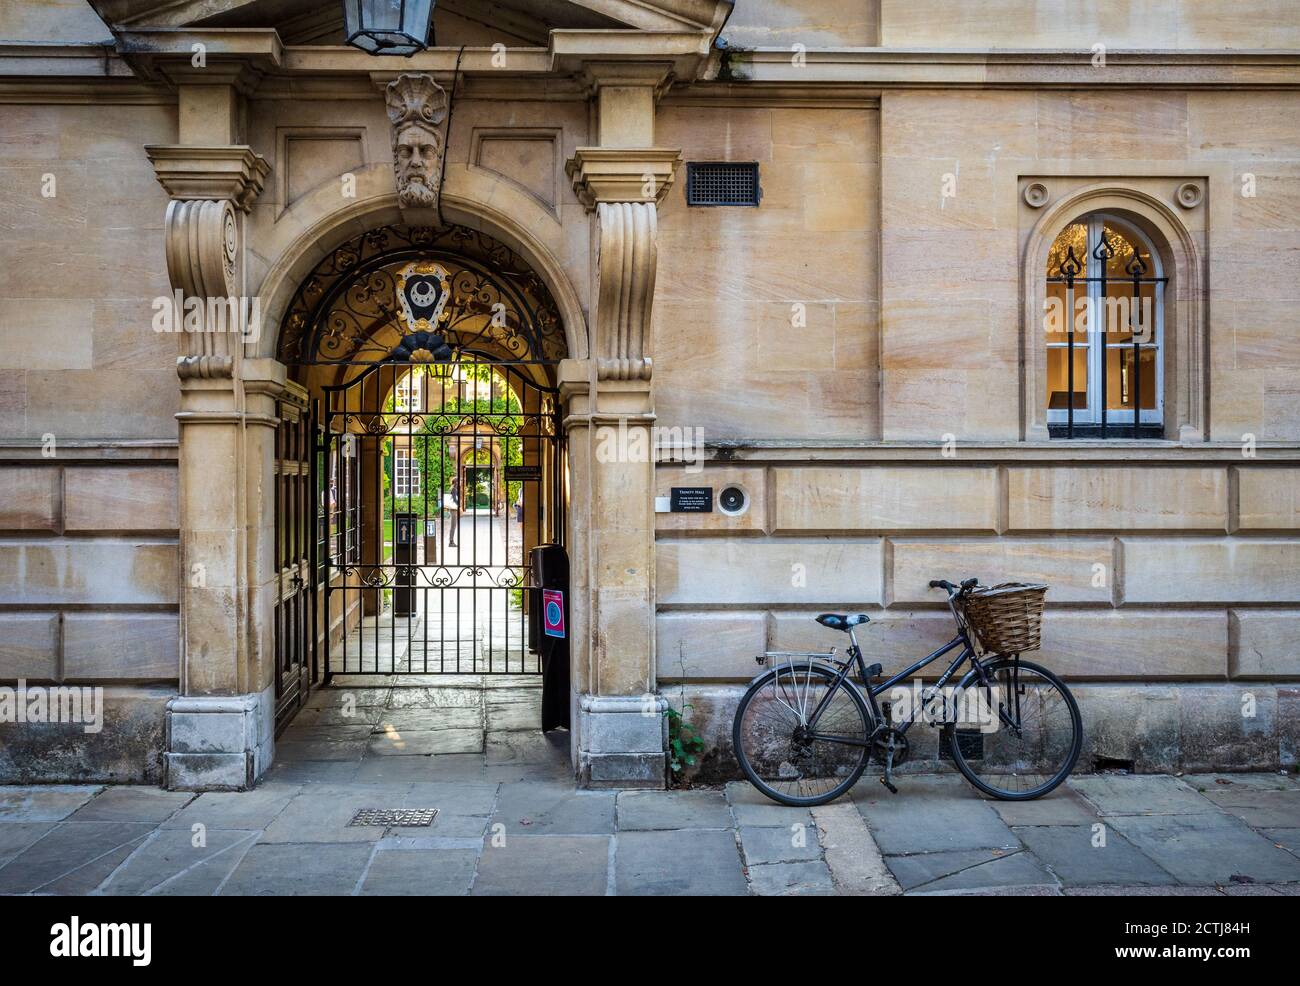 Trinity Hall College Cambridge. Teil der Cambridge University, gegründet 1350. Haupteingang zum Trinity Hall College, University of Cambridge. Stockfoto